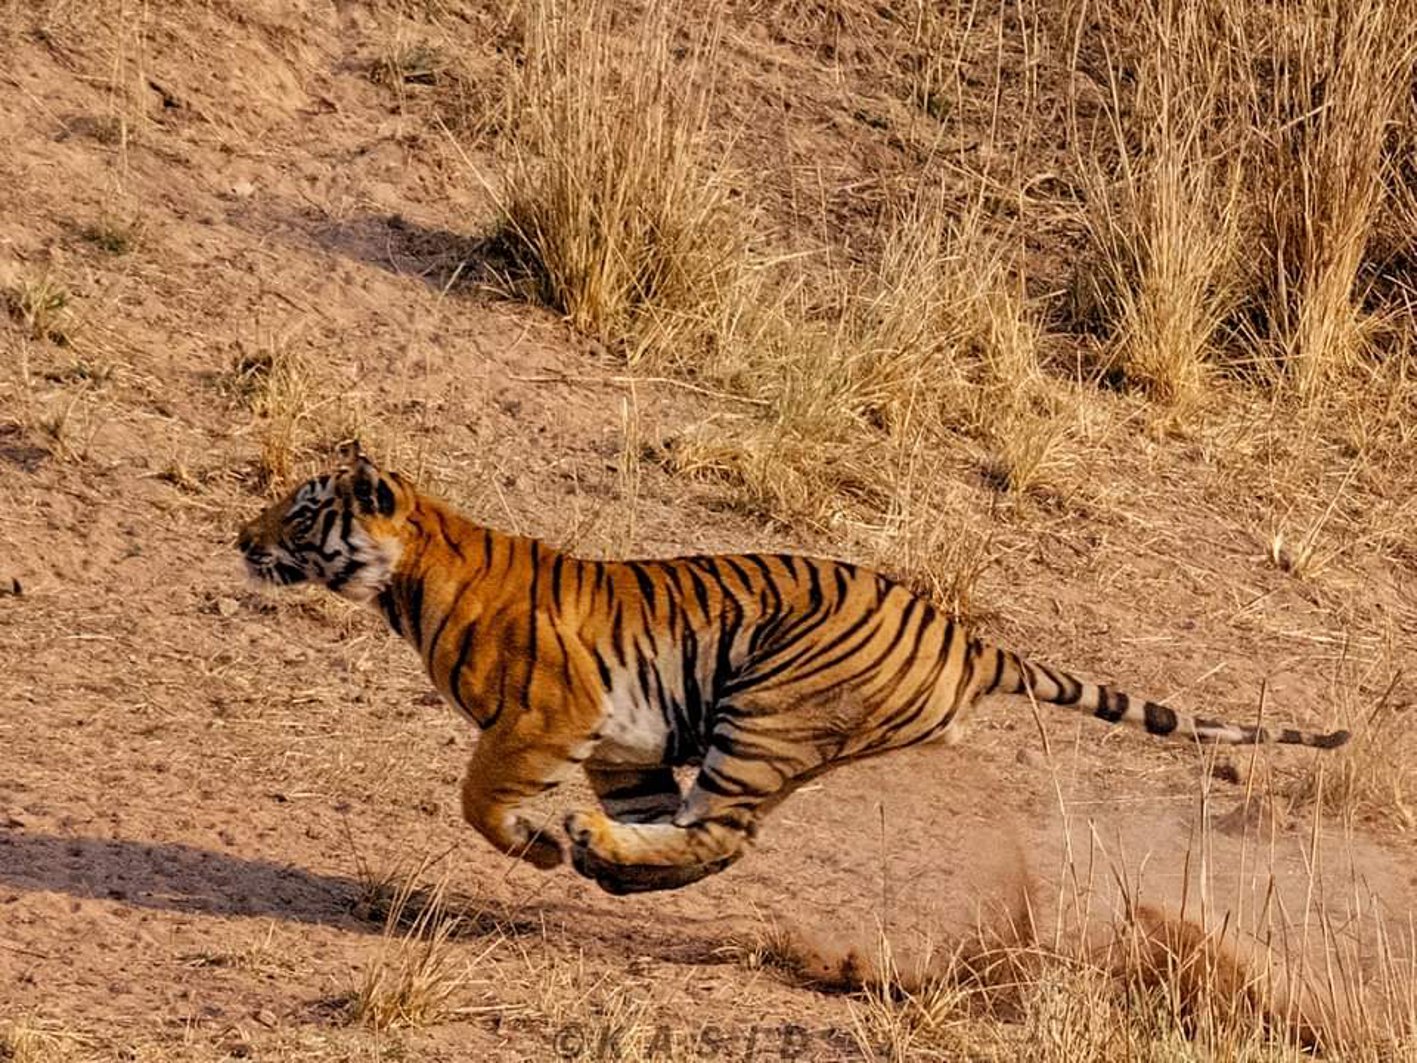 टाइगर को चकमा देकर भाग रहा था शिकार, नजर हटते ही बाघ ने लगाई लंबी छलांग